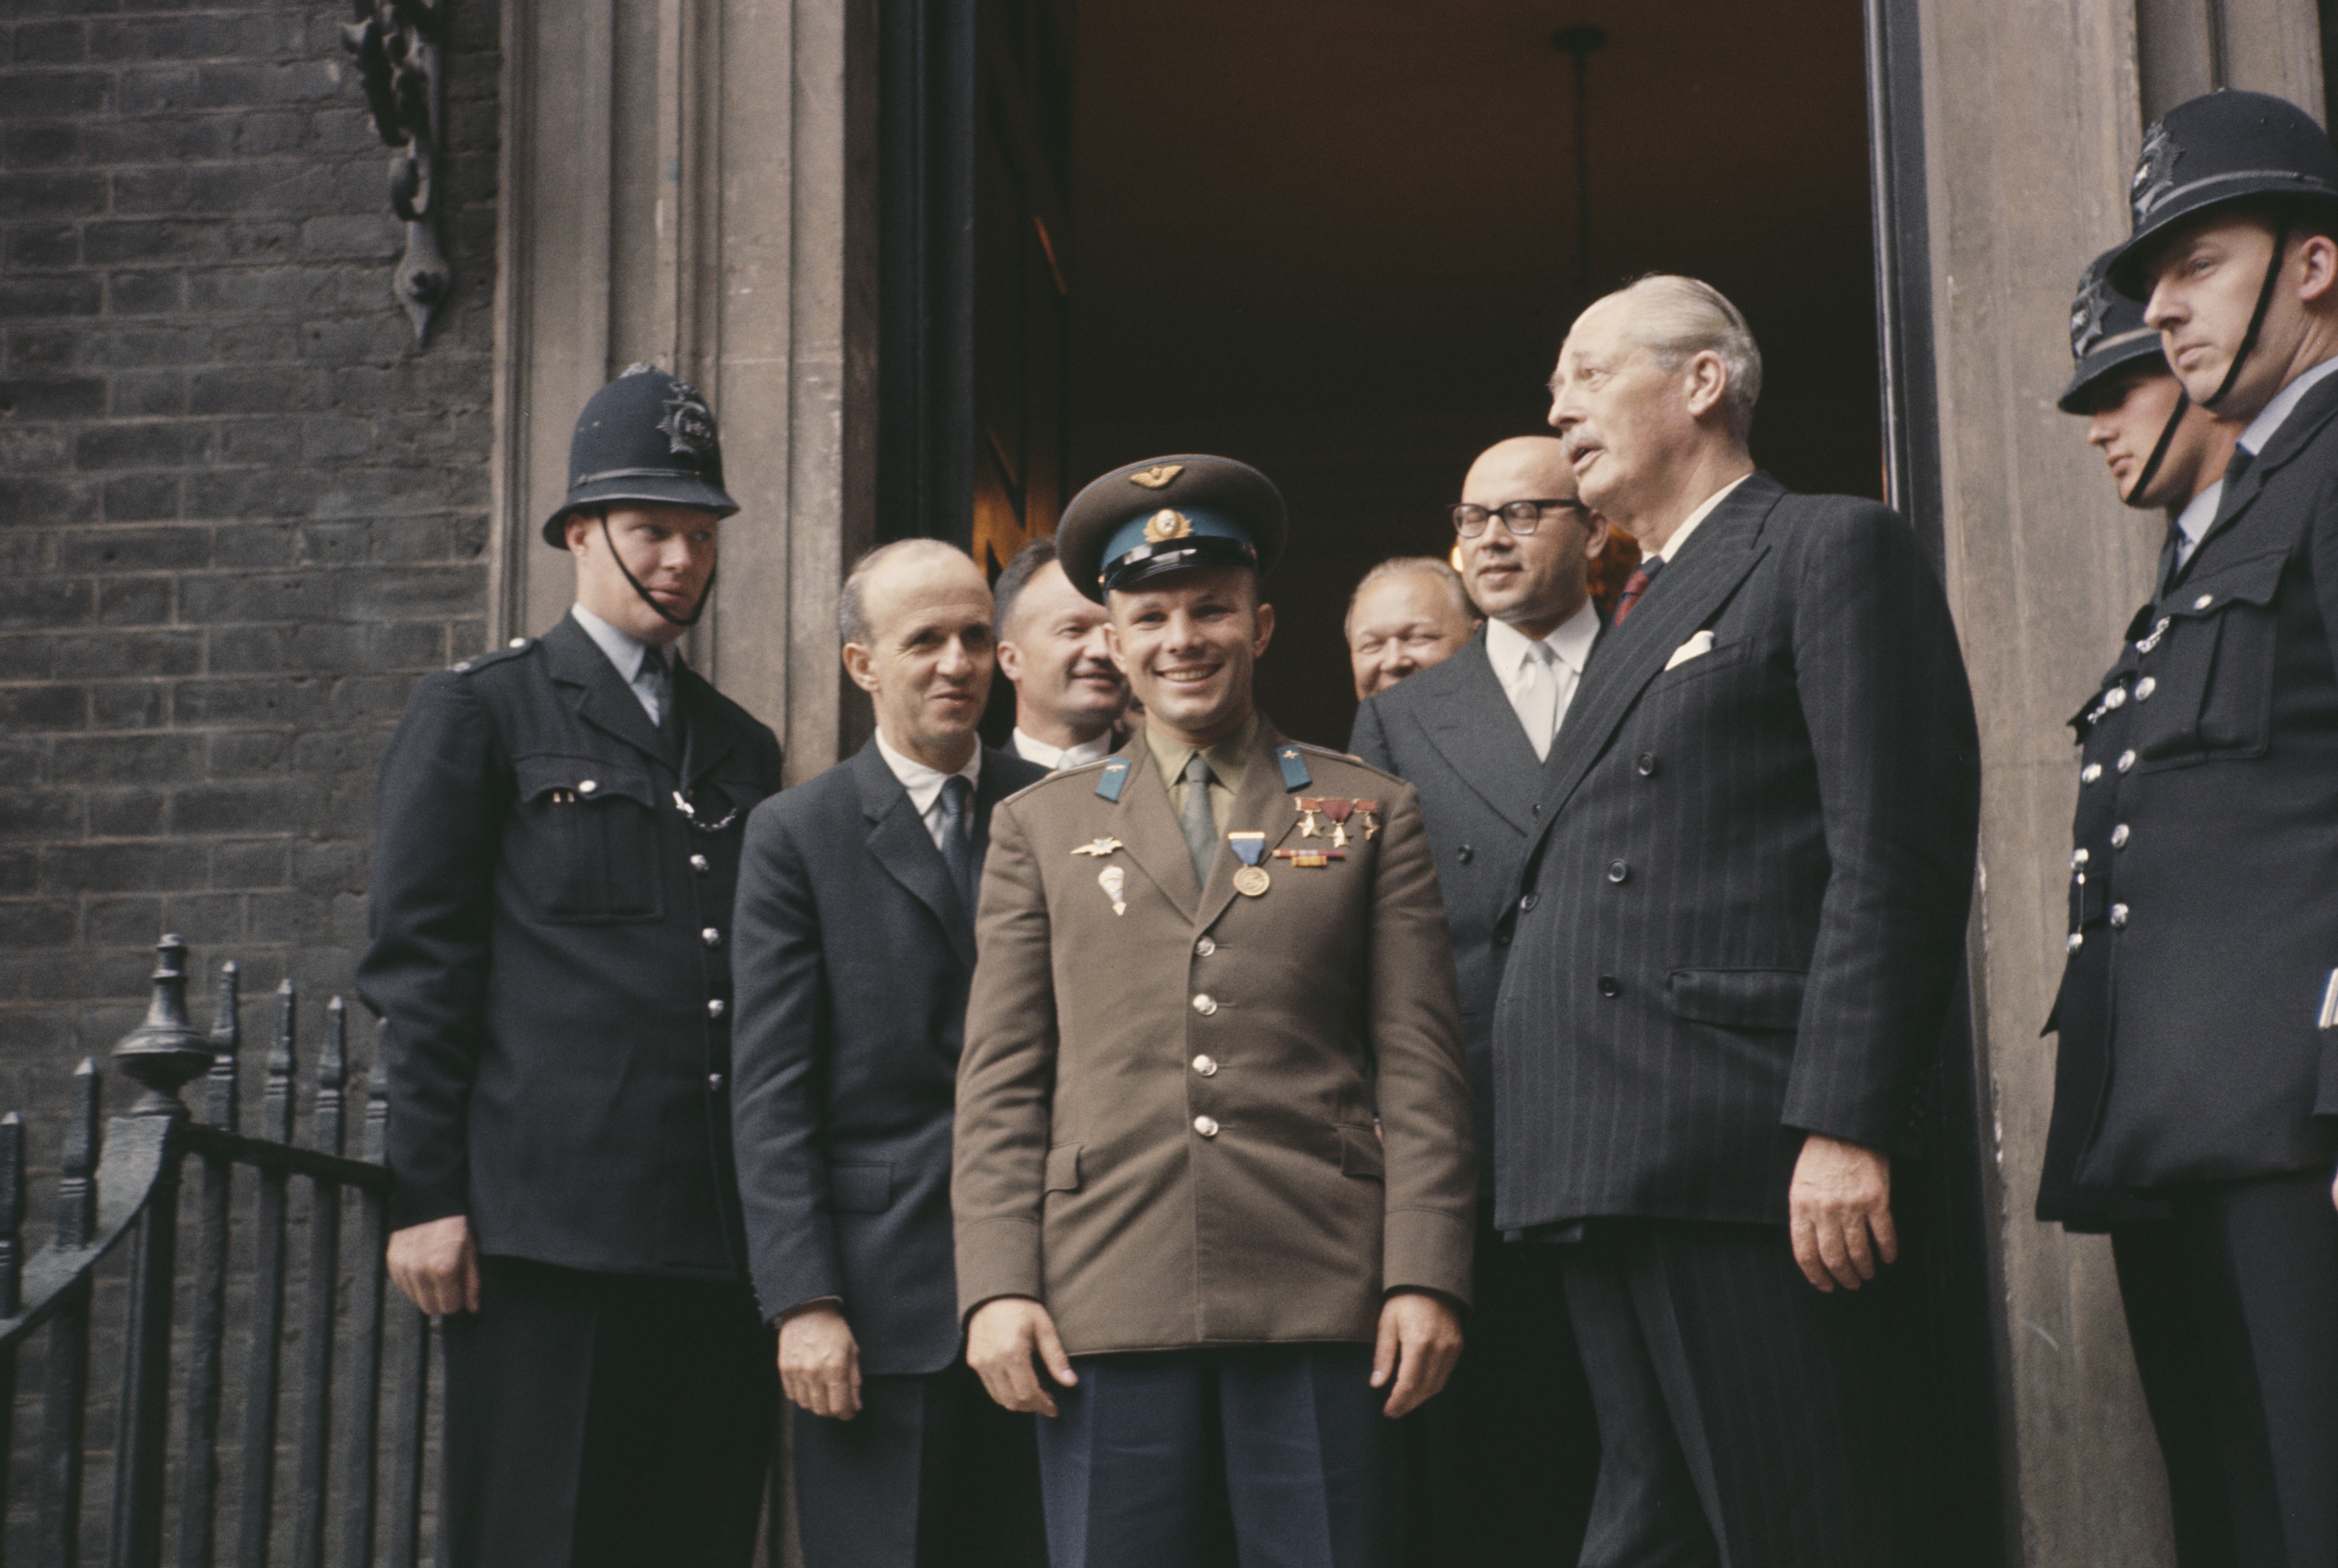 Il cosmonauta sovietico Yuri Gagarin durante un incontro con il primo ministro britannico Harold Macmillan all'Admiralty House di Londra, il 13 luglio 1961